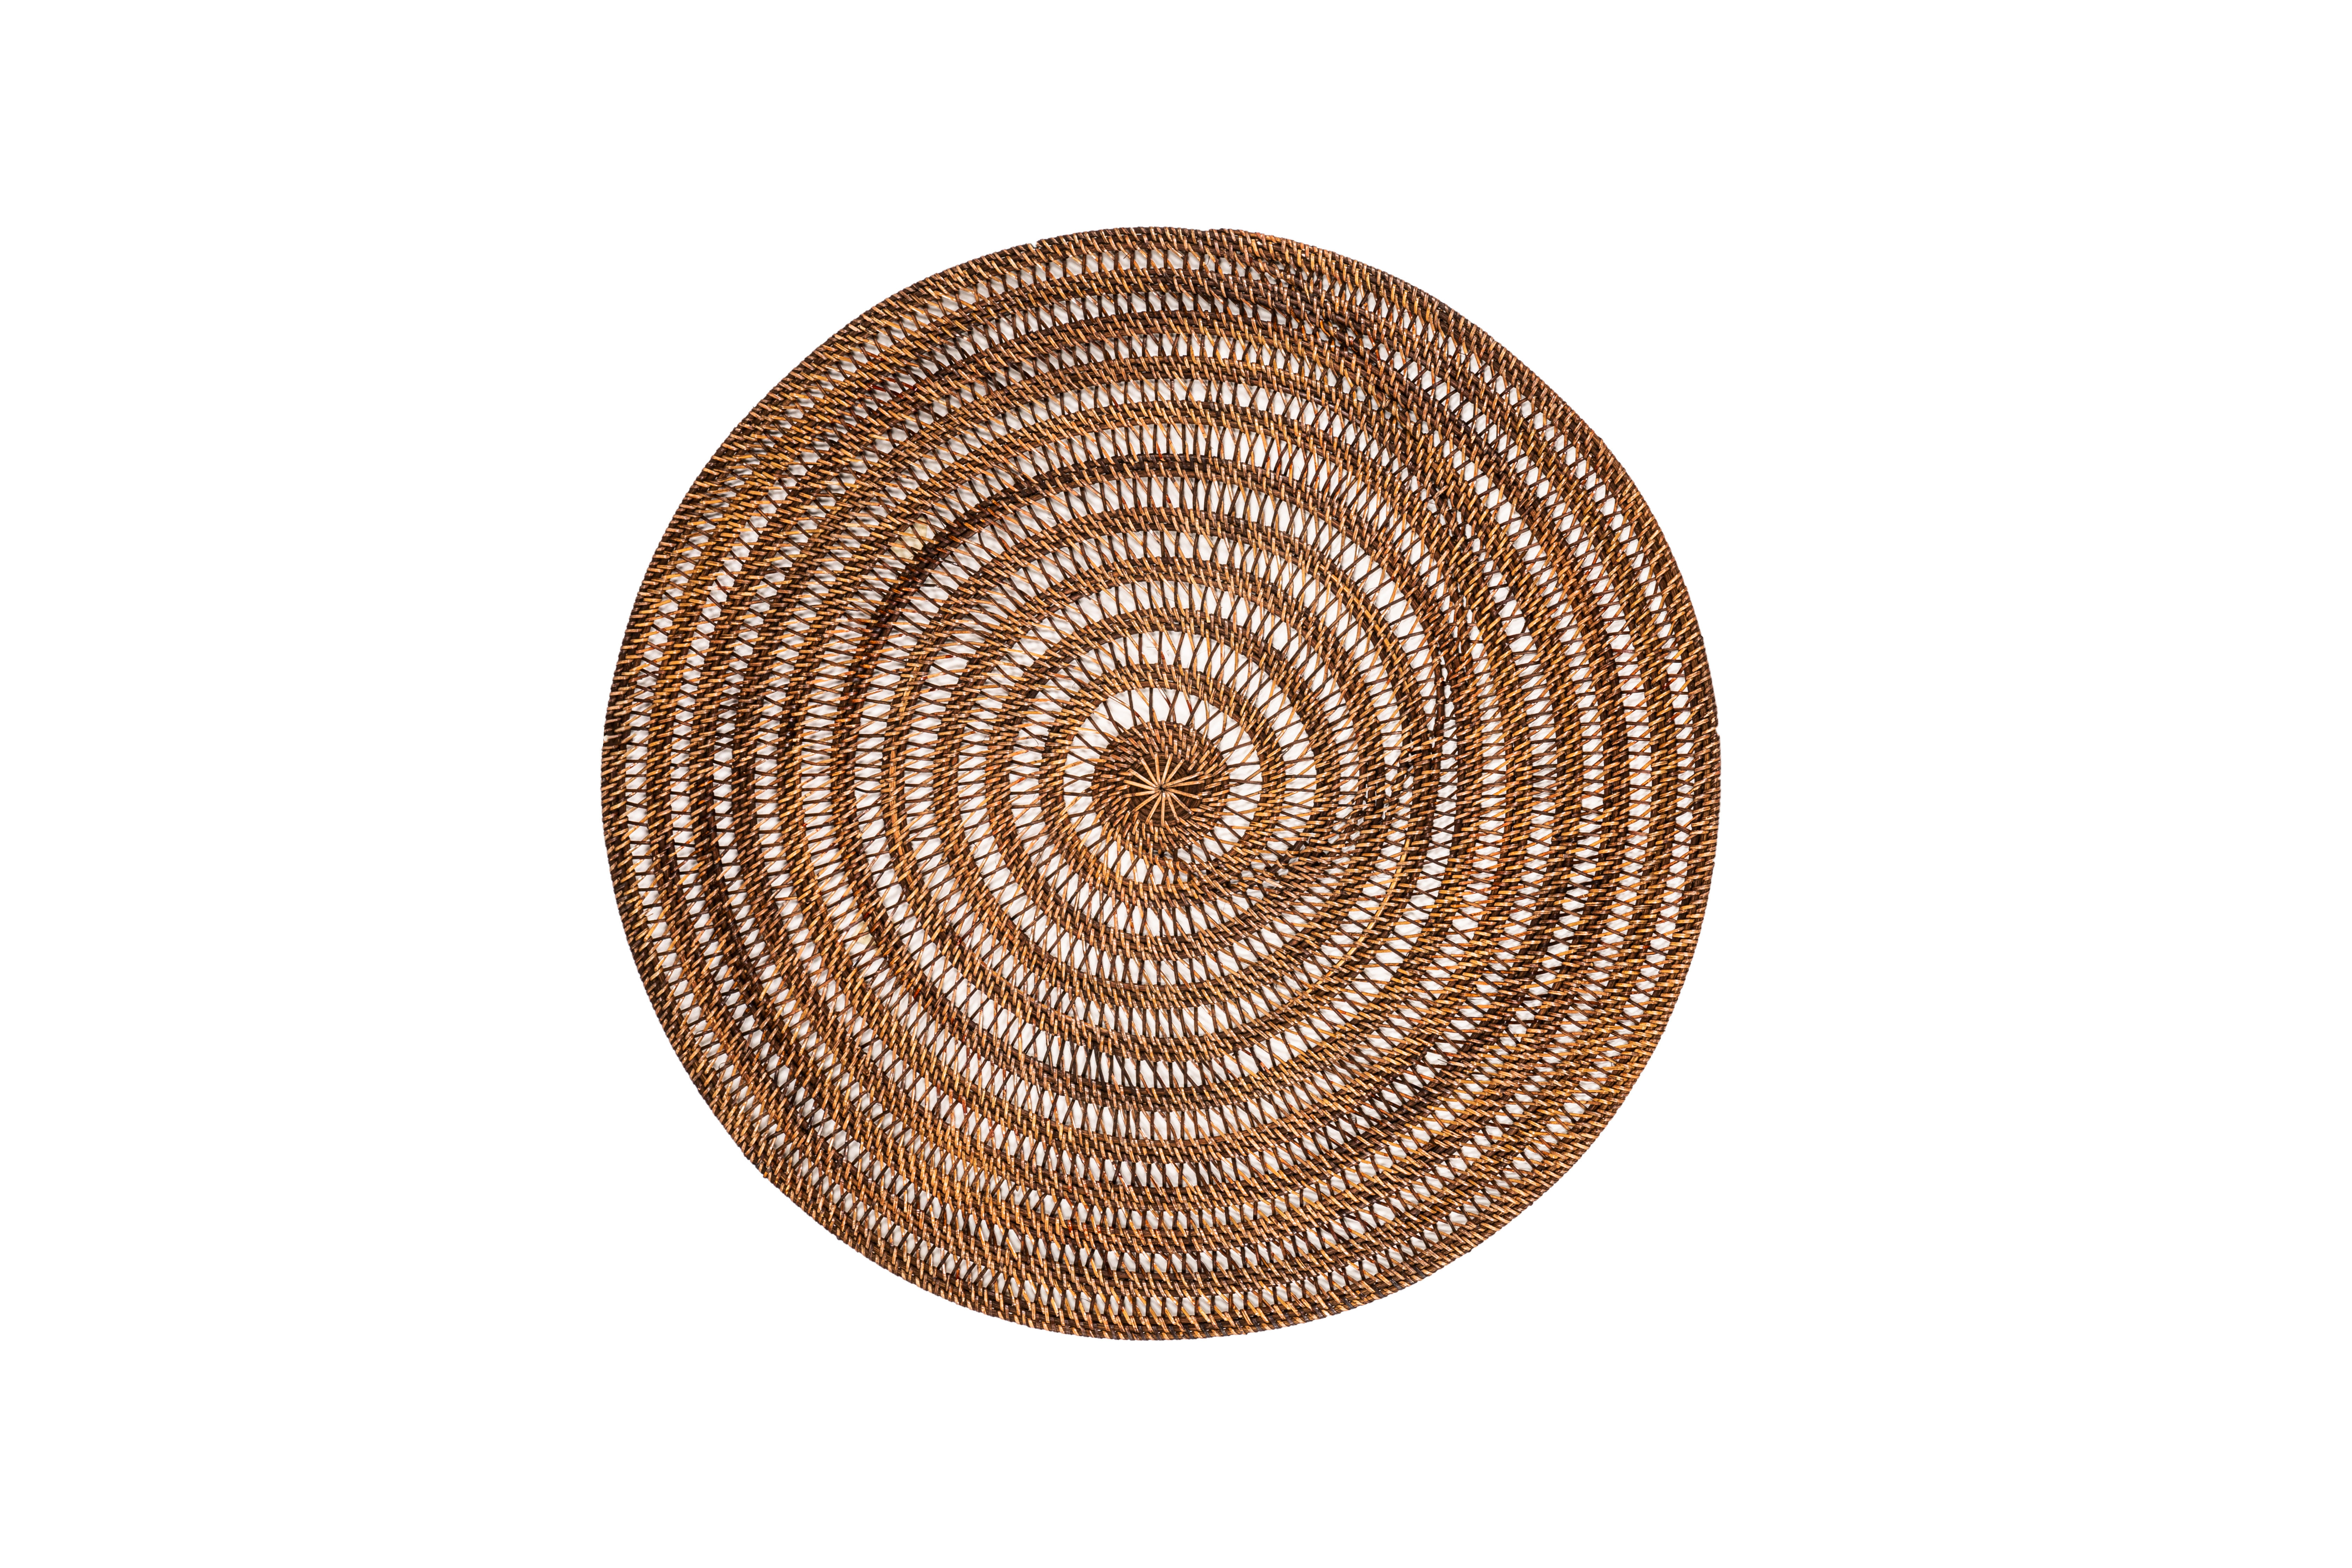 Decoration rattan, round - dia 80 cm - SPIRAL, dark brown 